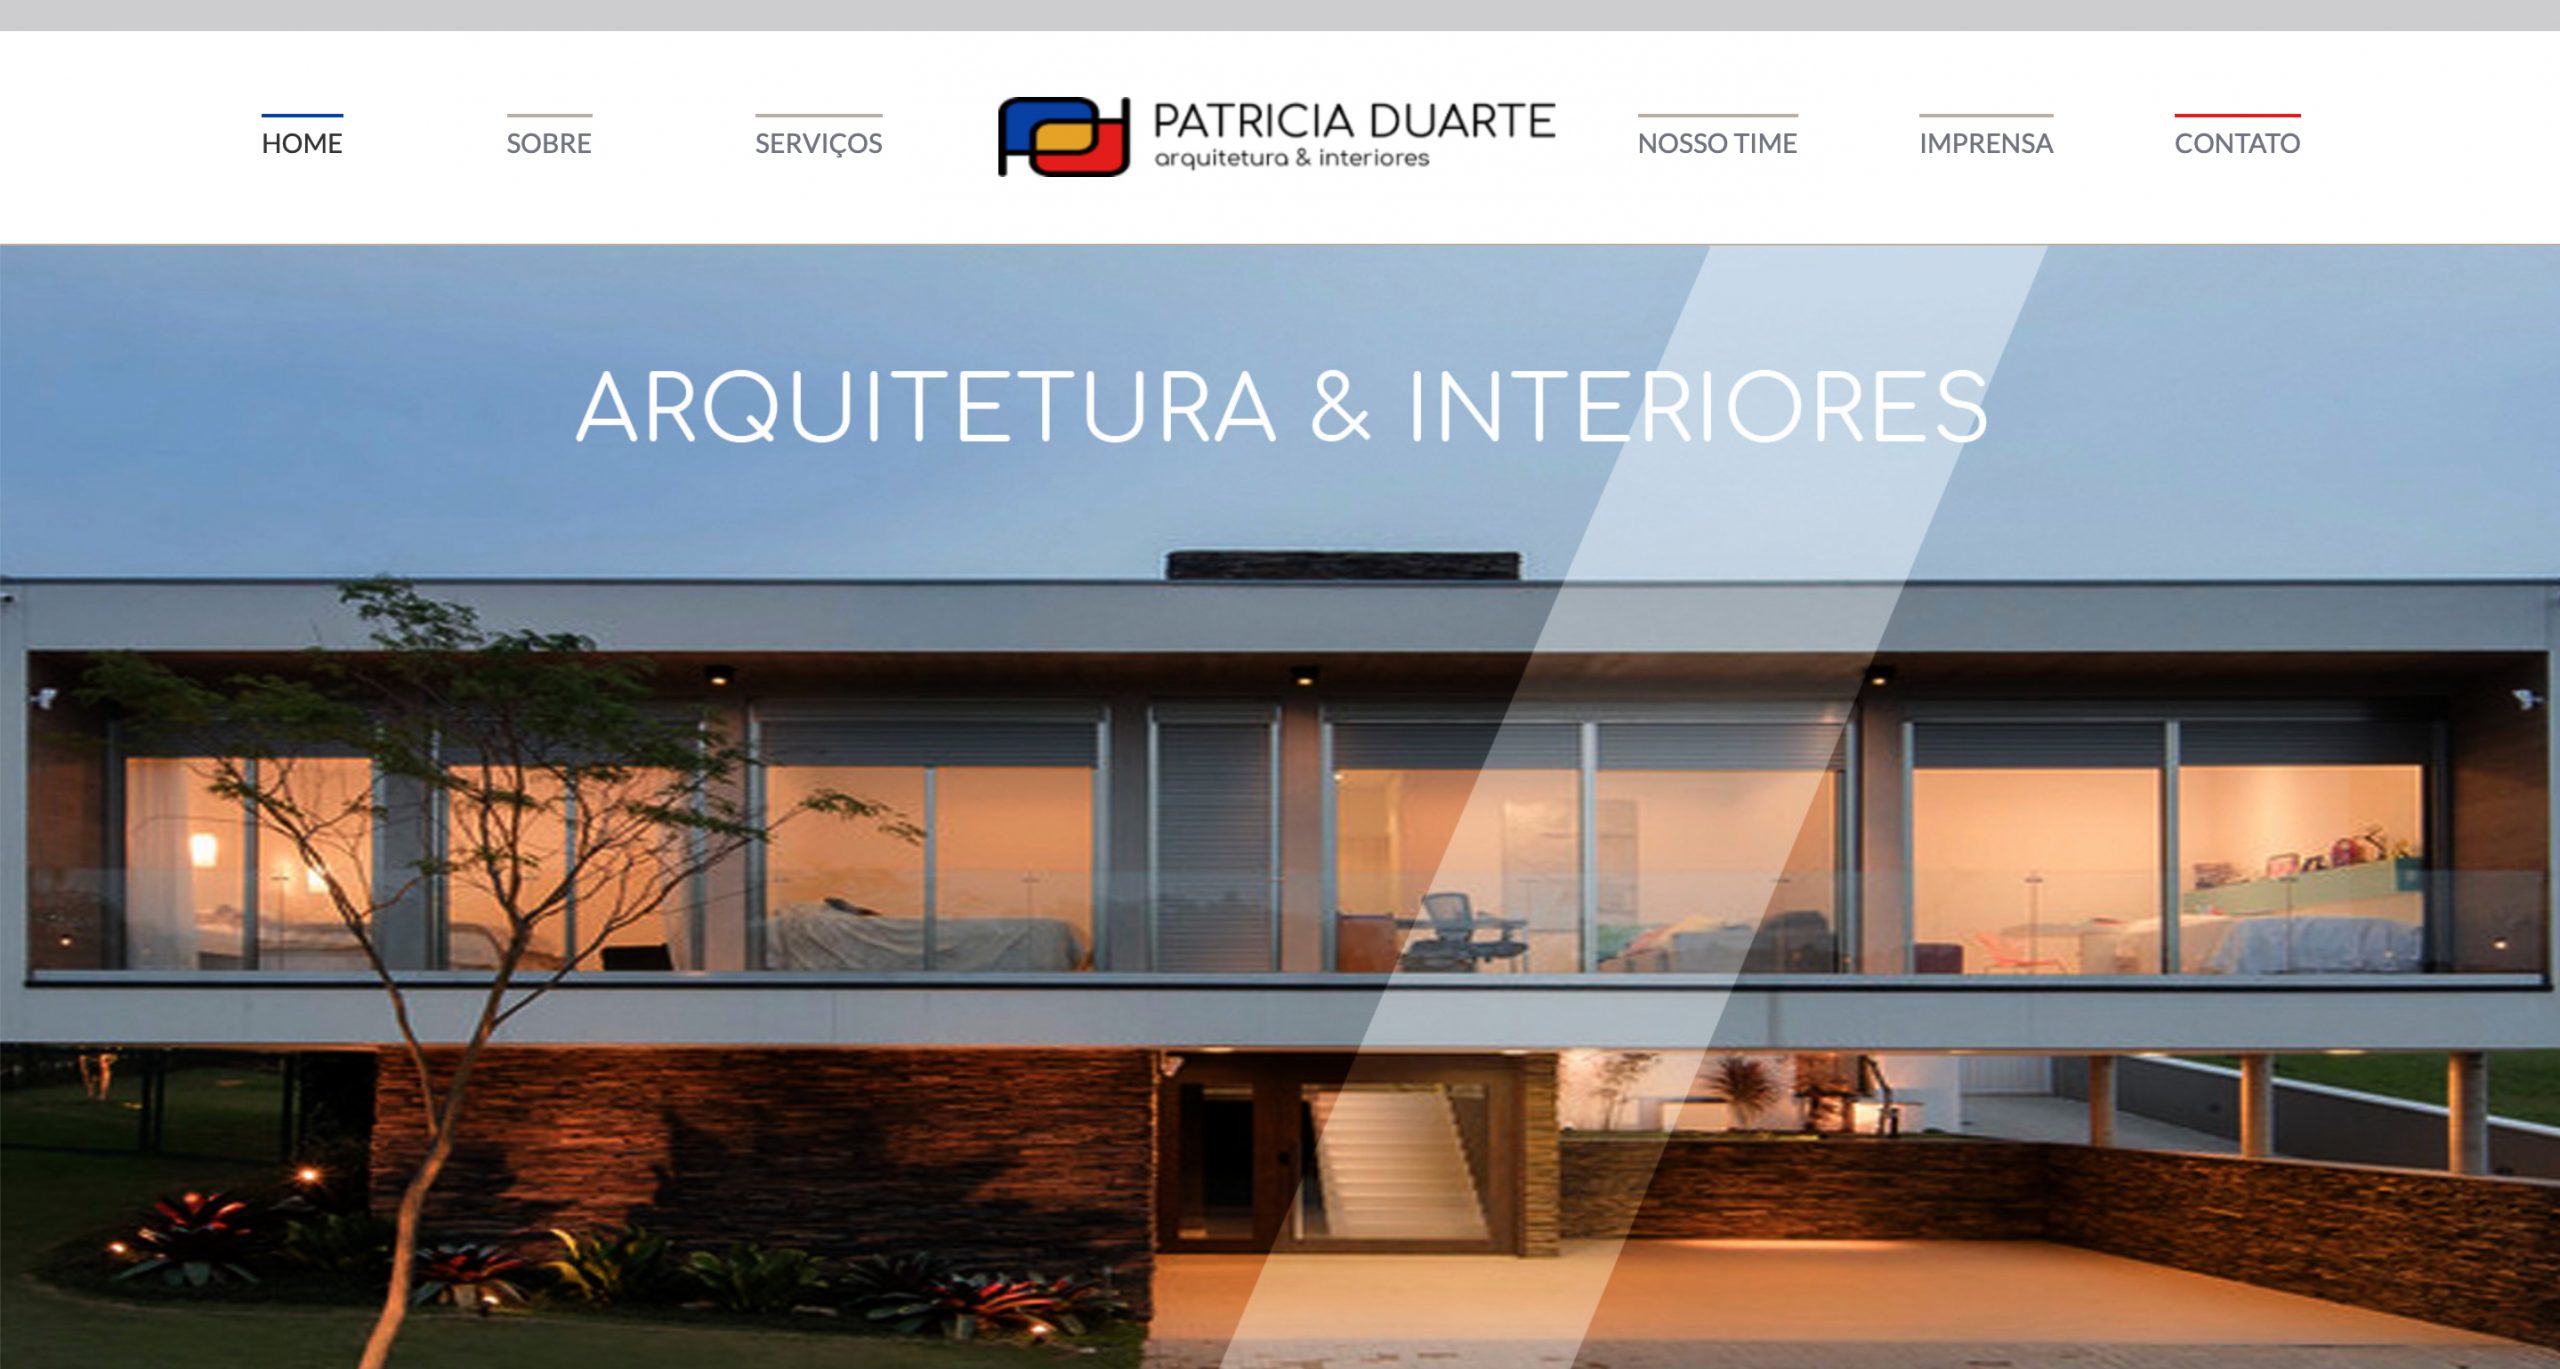 Arquiteta Patricia Duarte